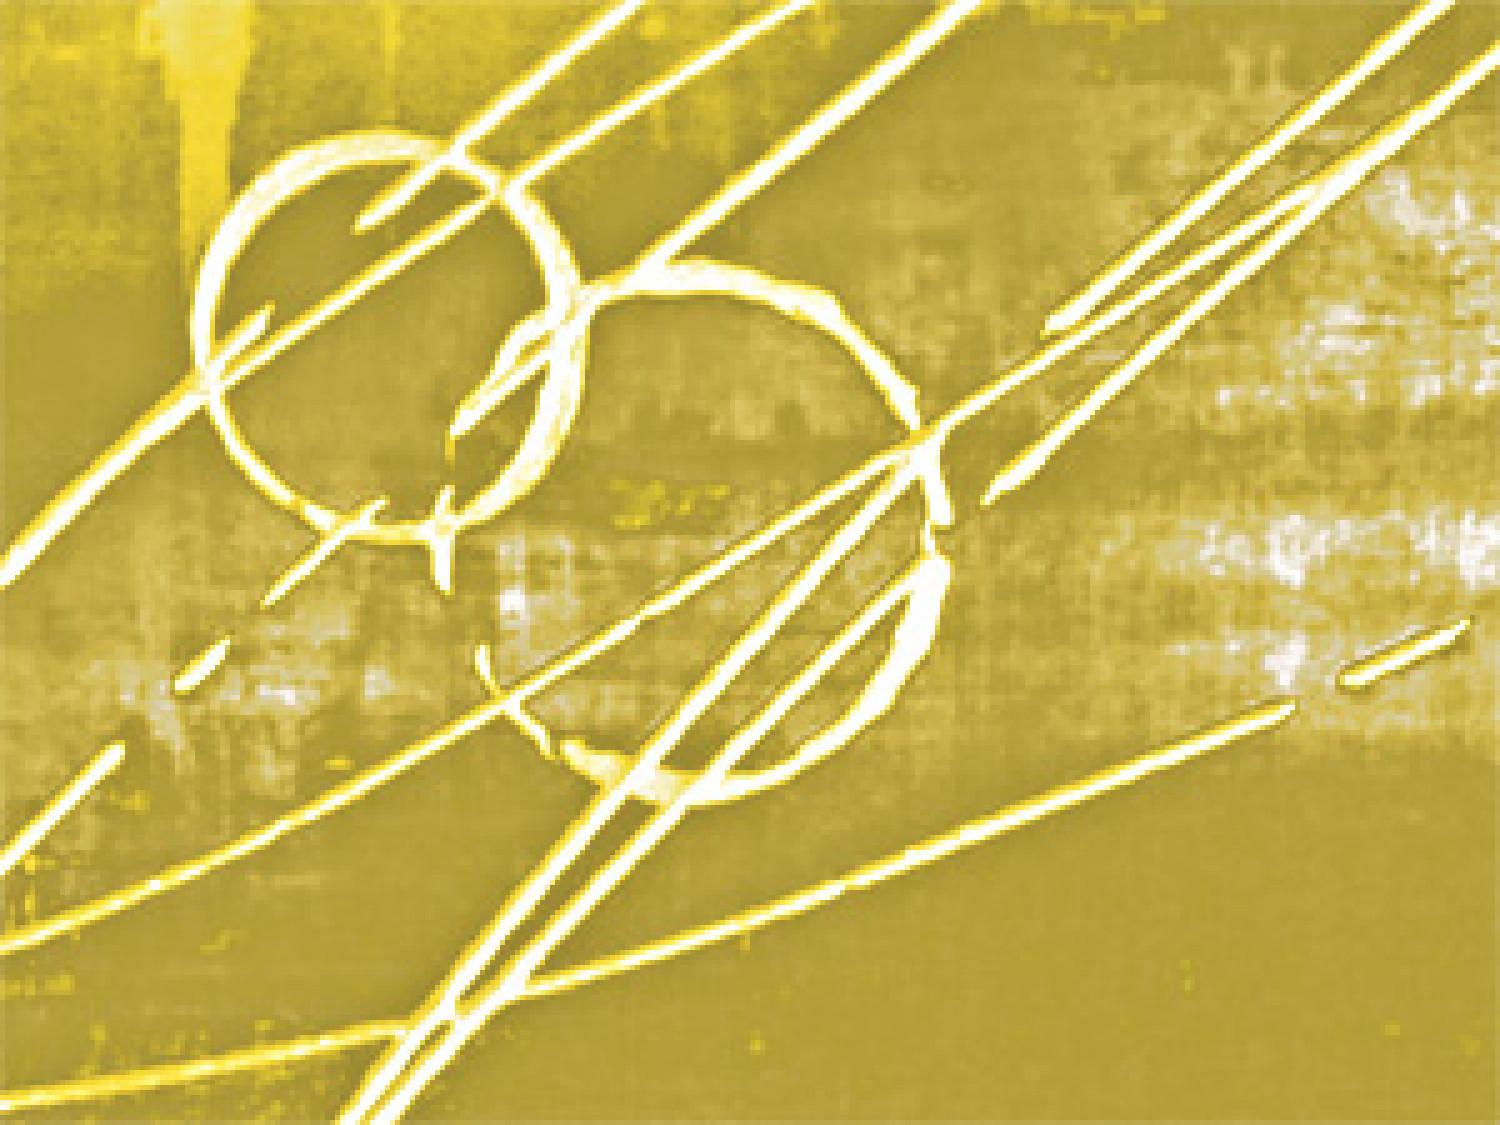 Cuadro moderno Abstracción (3 piezas) - figuras amarillas en fondo marrón